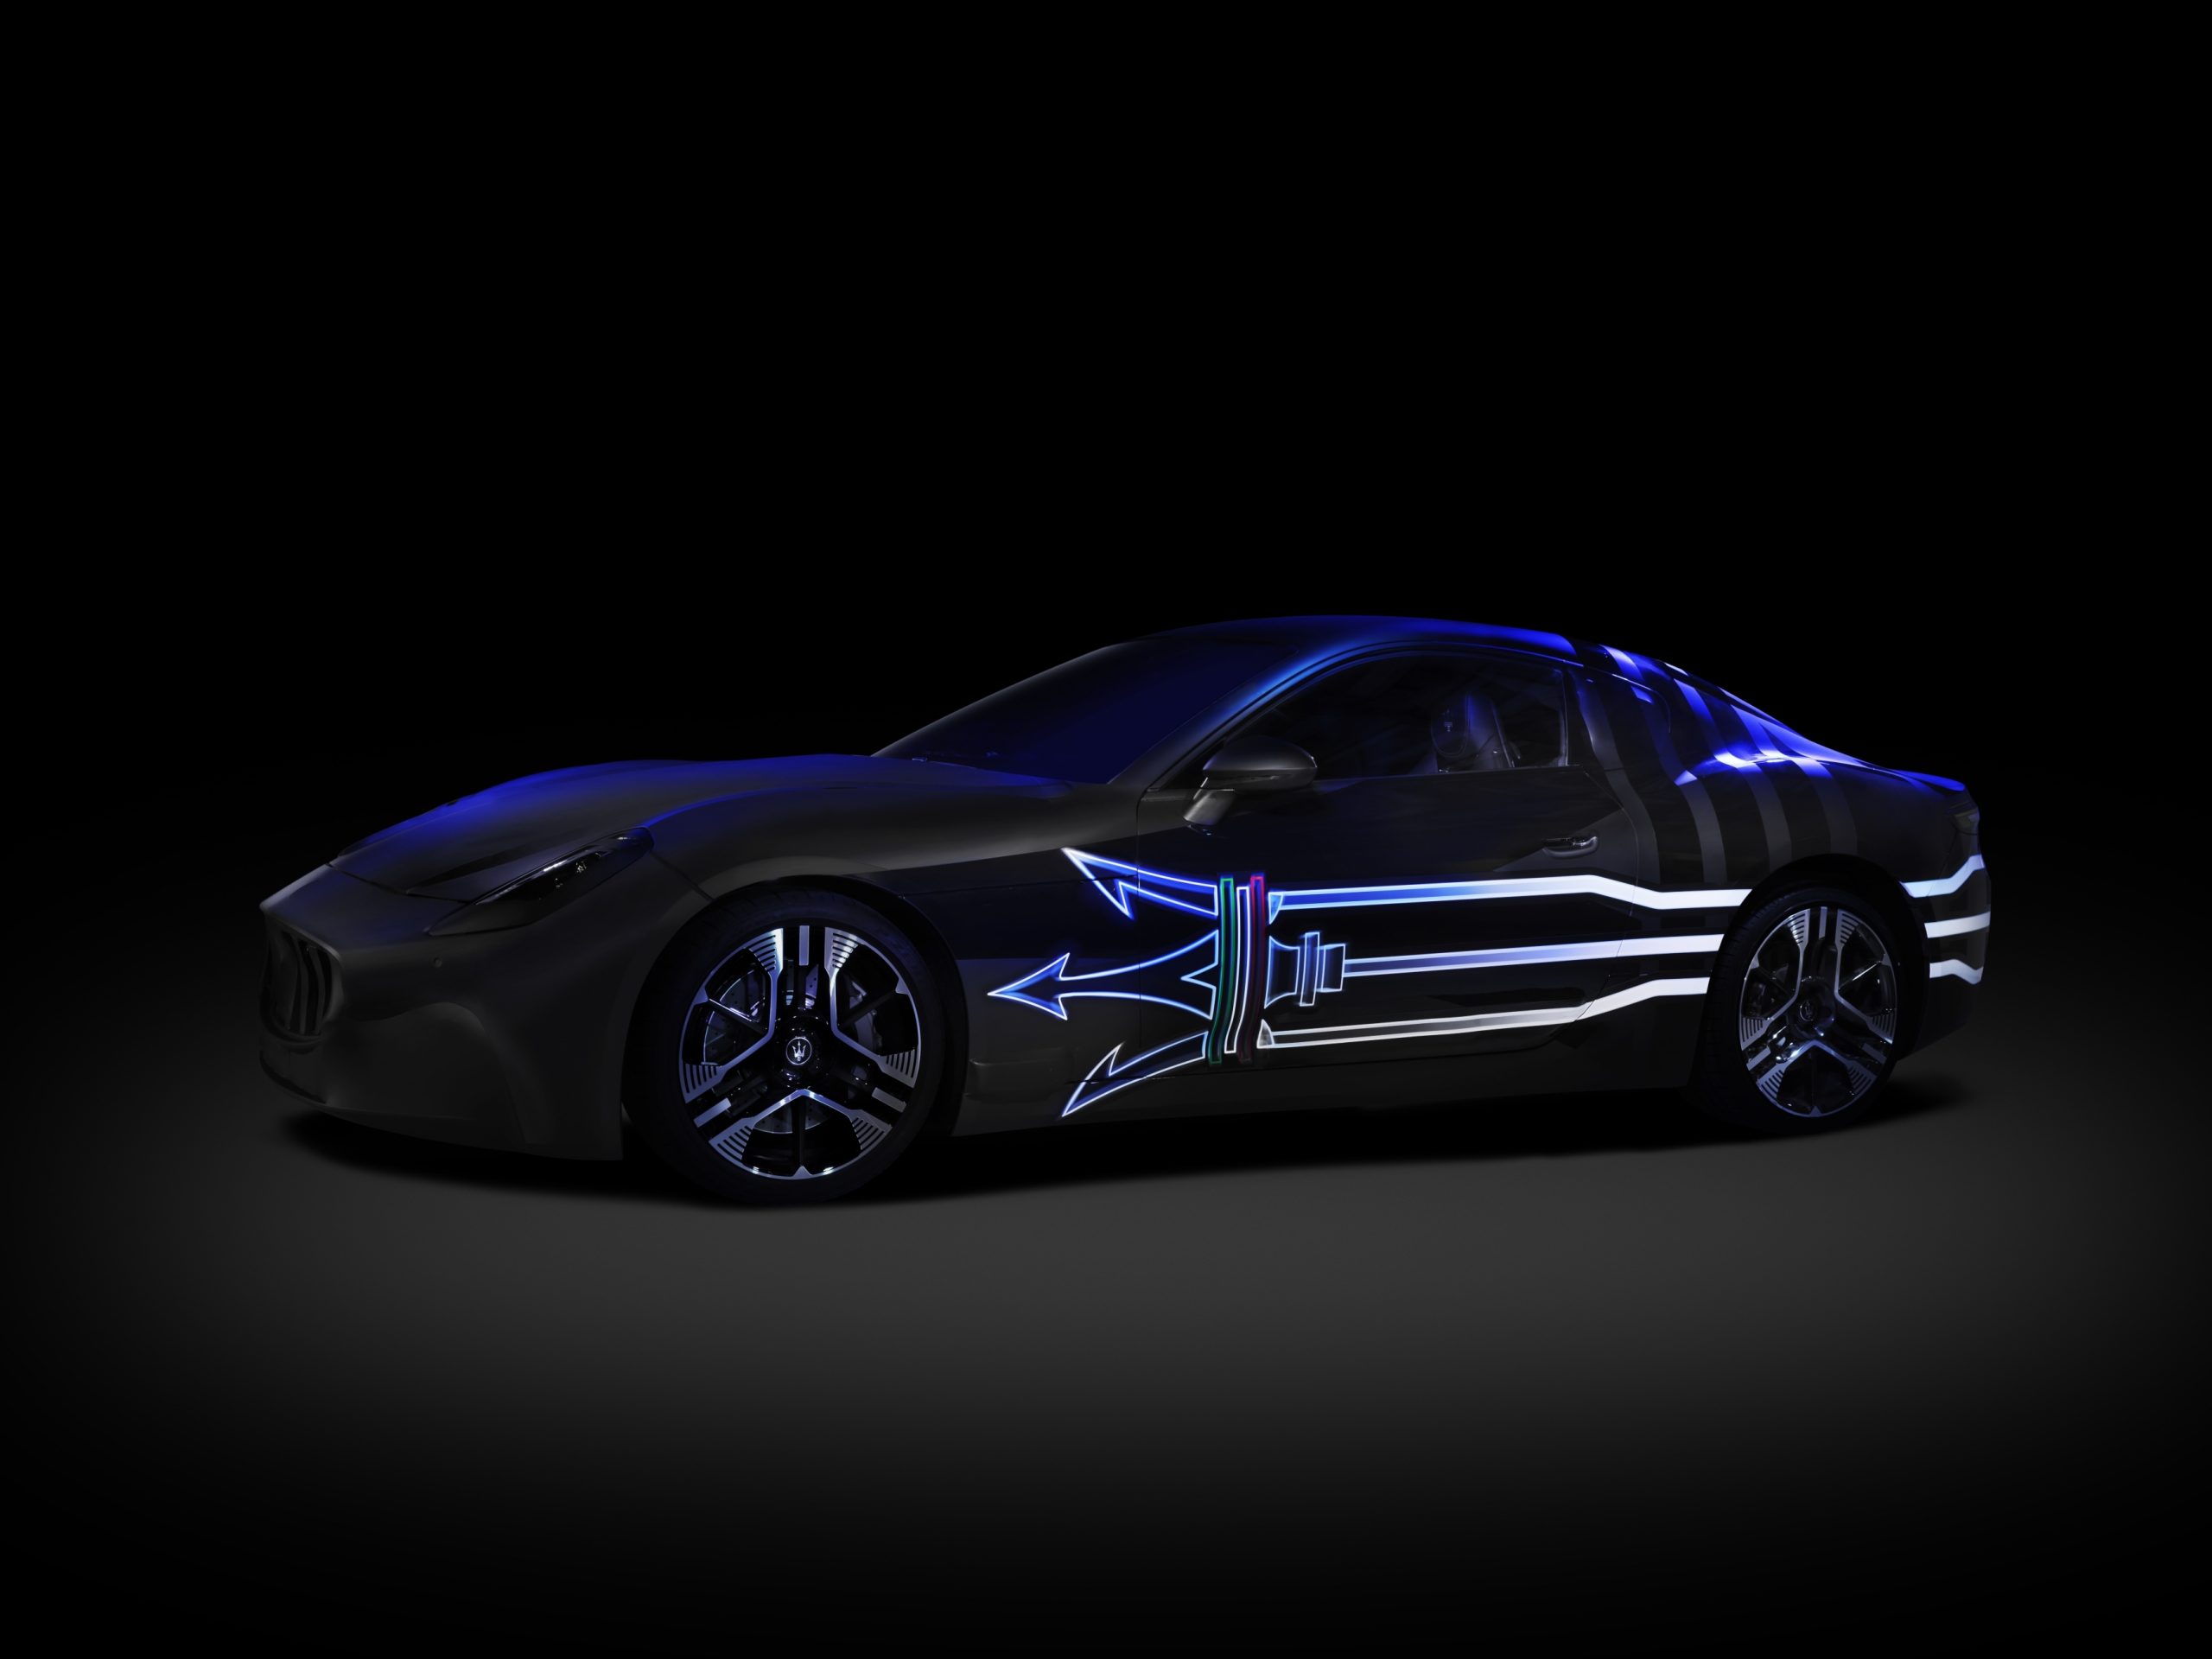 Maserati completamente elettrica entro il 2025.